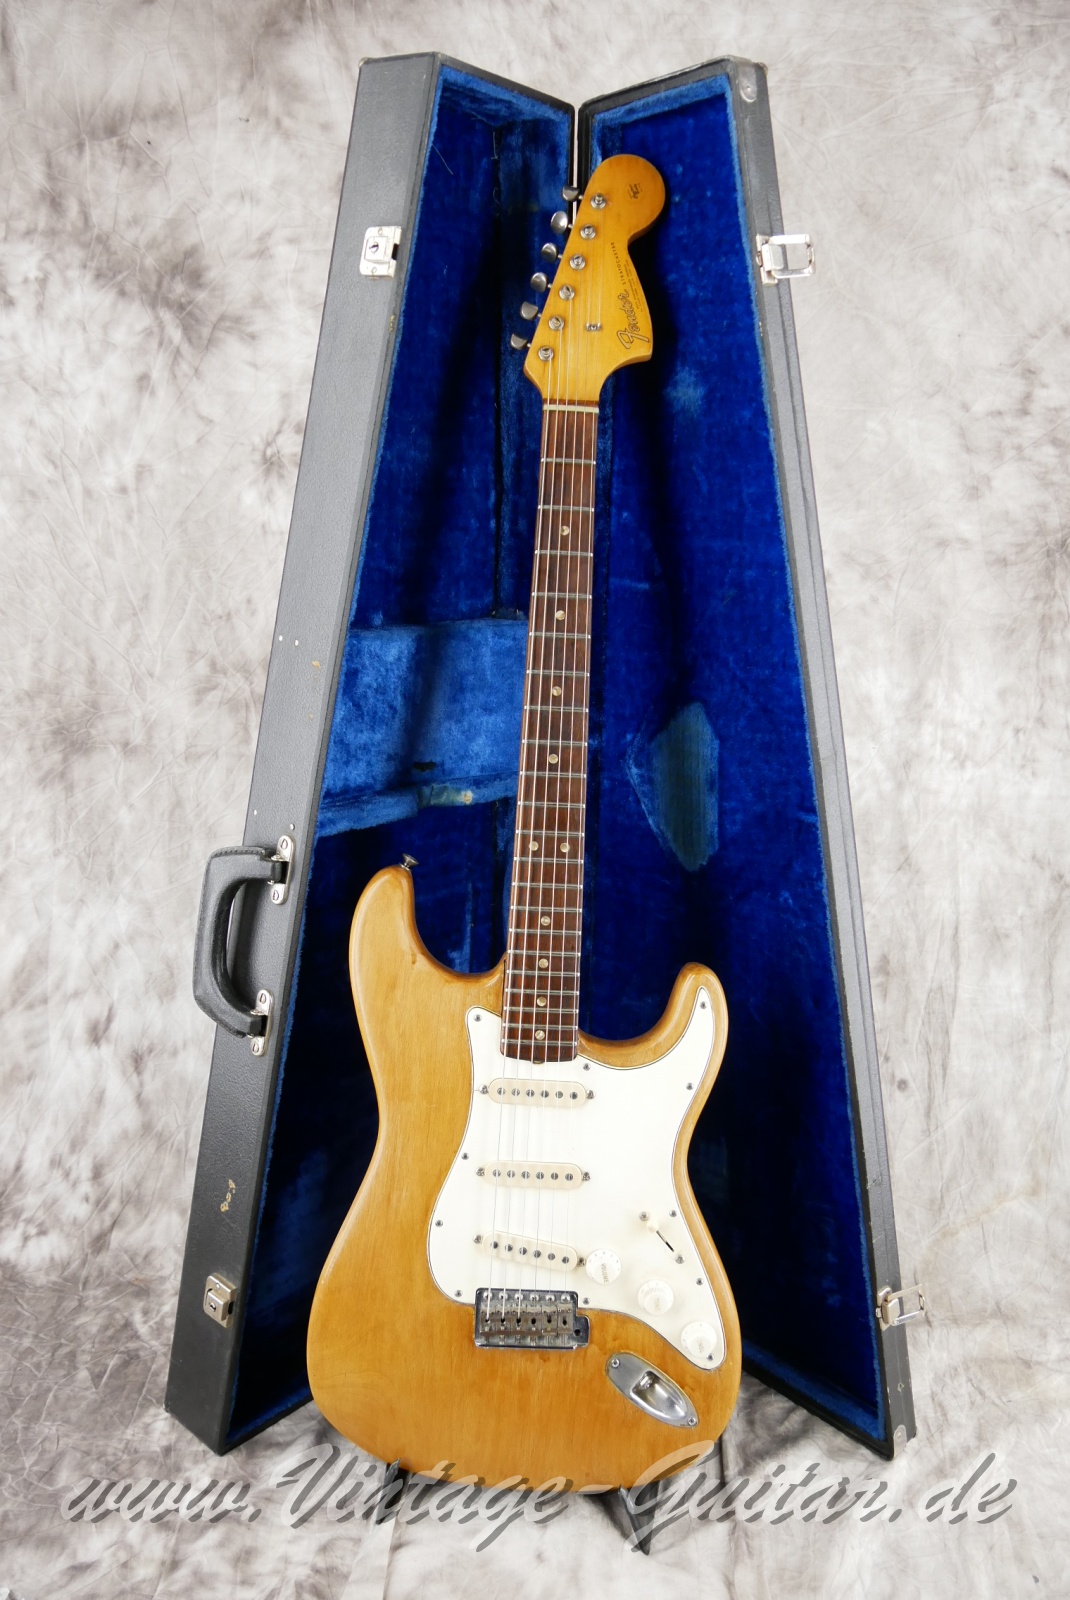 img/vintage/5603/Fender_Stratocaster_body_stripped_1966-034.JPG